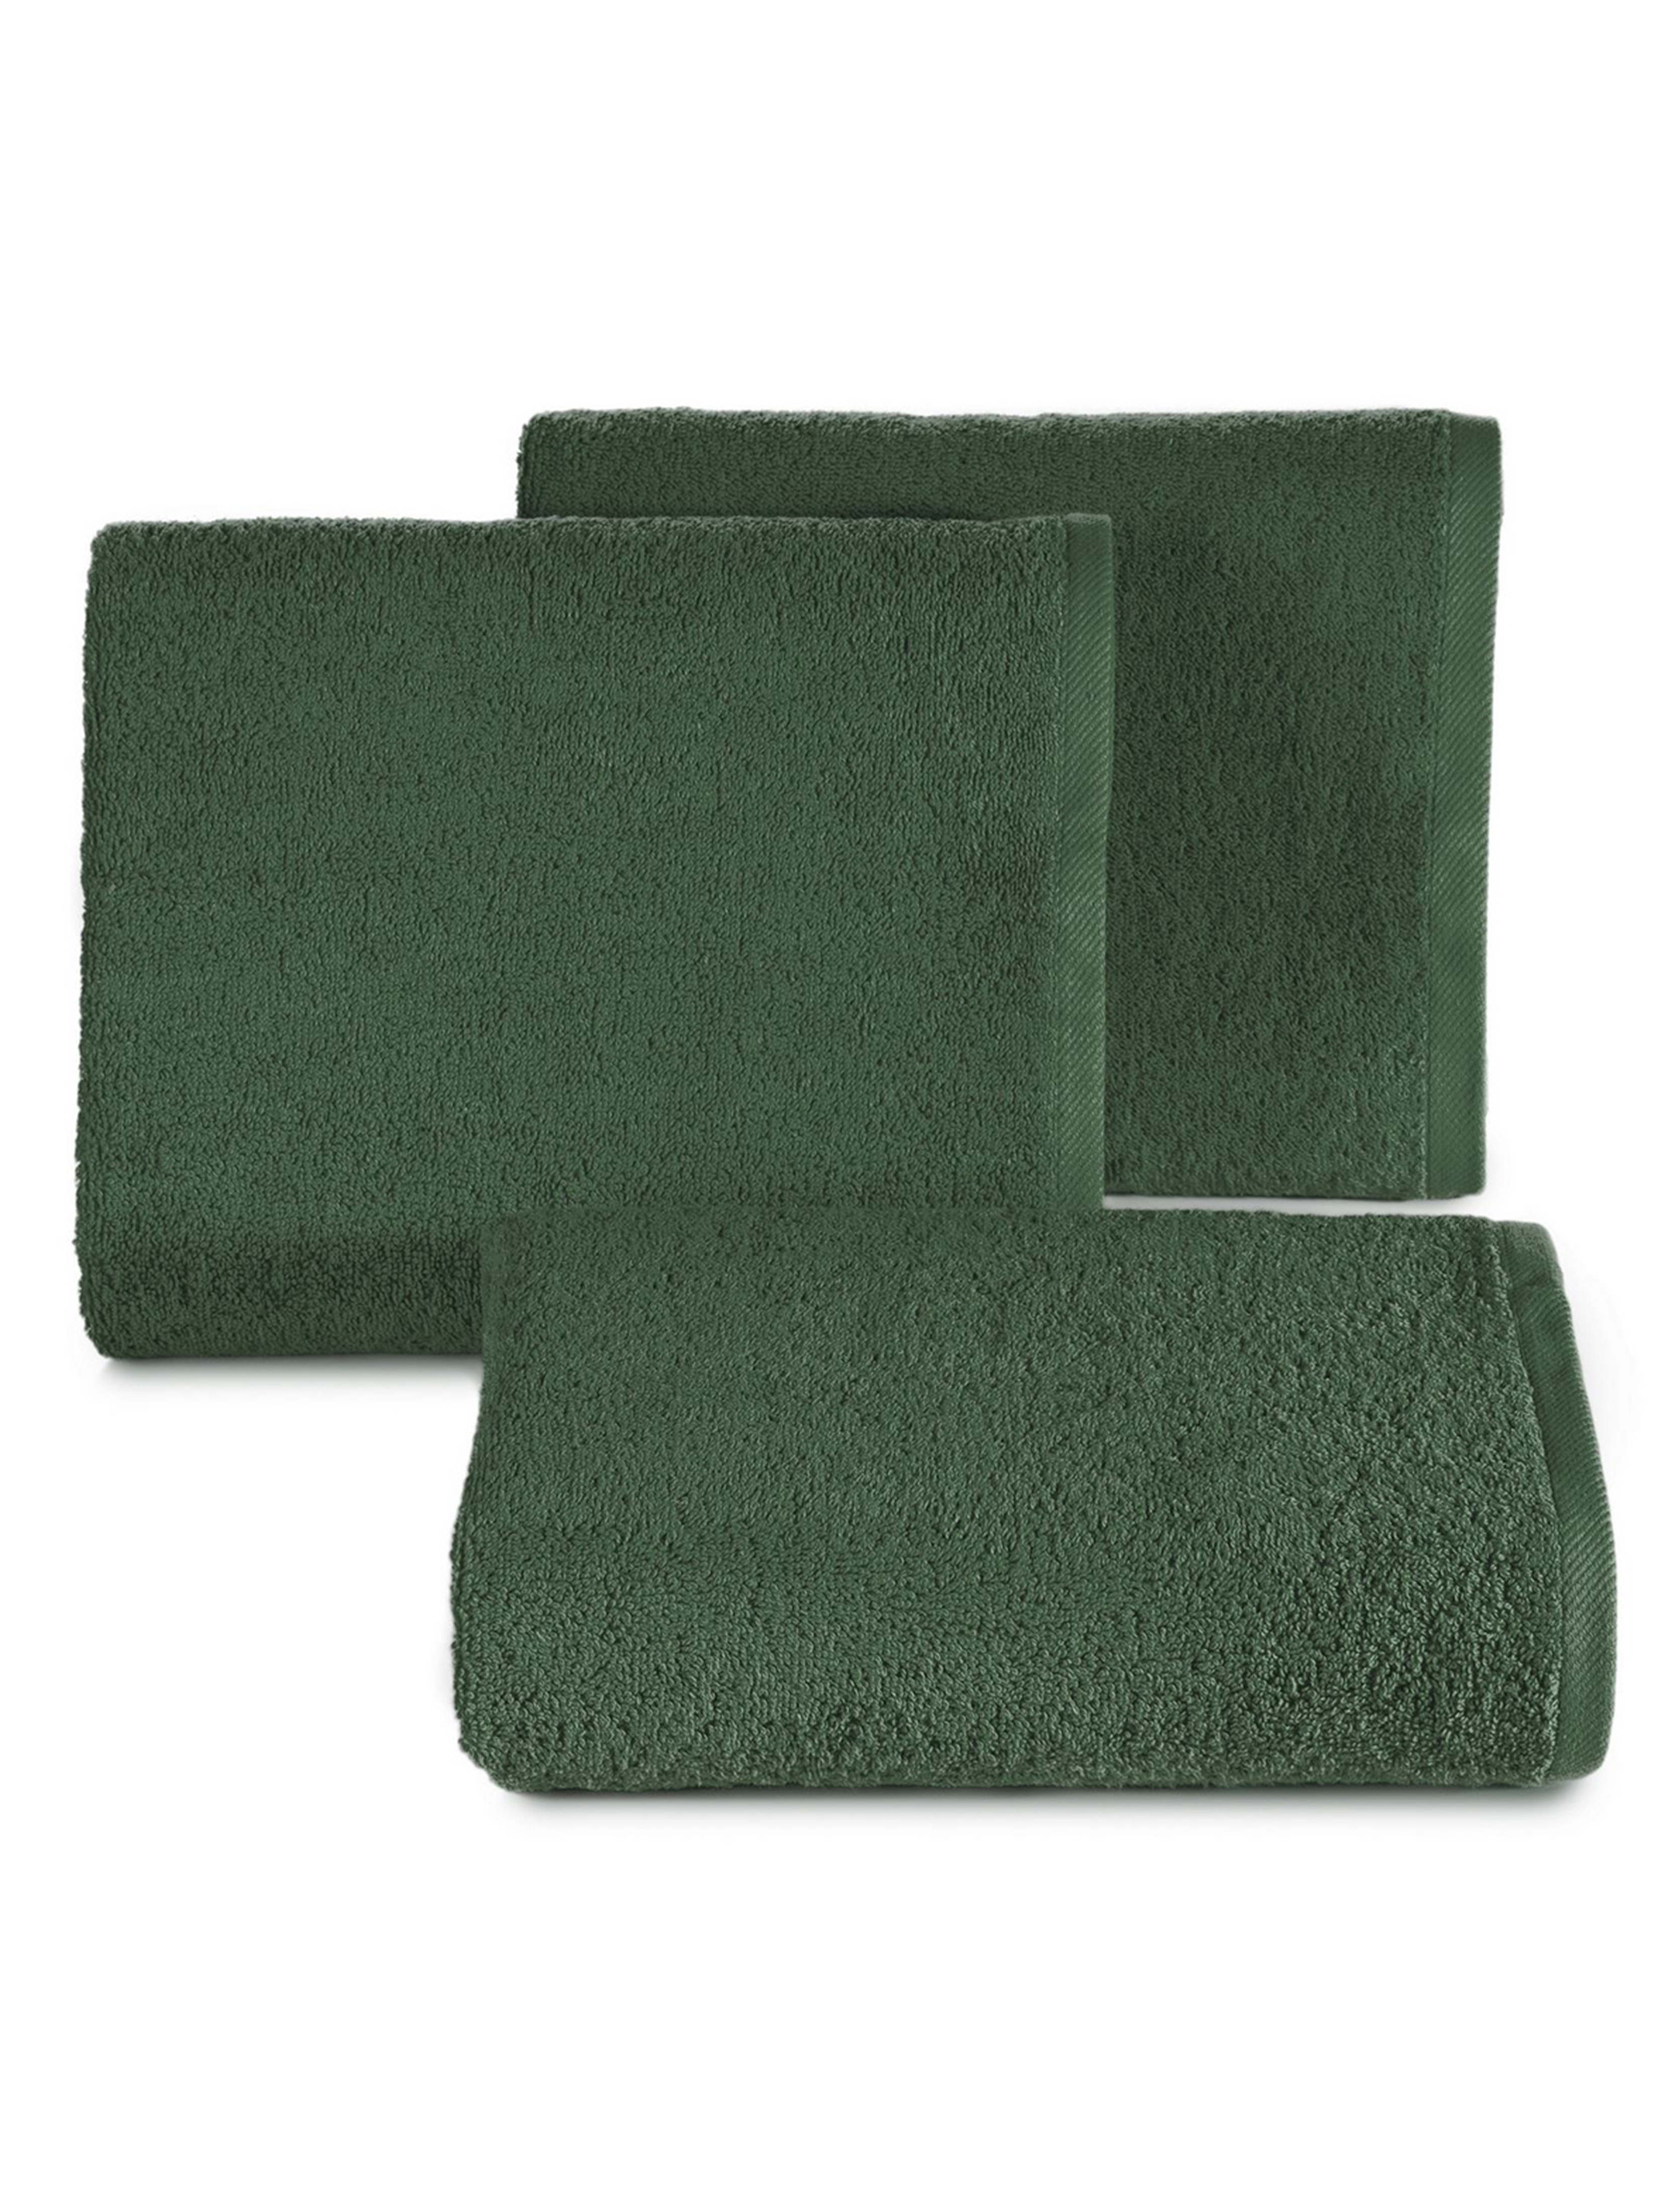 Ręcznik gładki2 (31) 70x140 cm butelkowy zielony